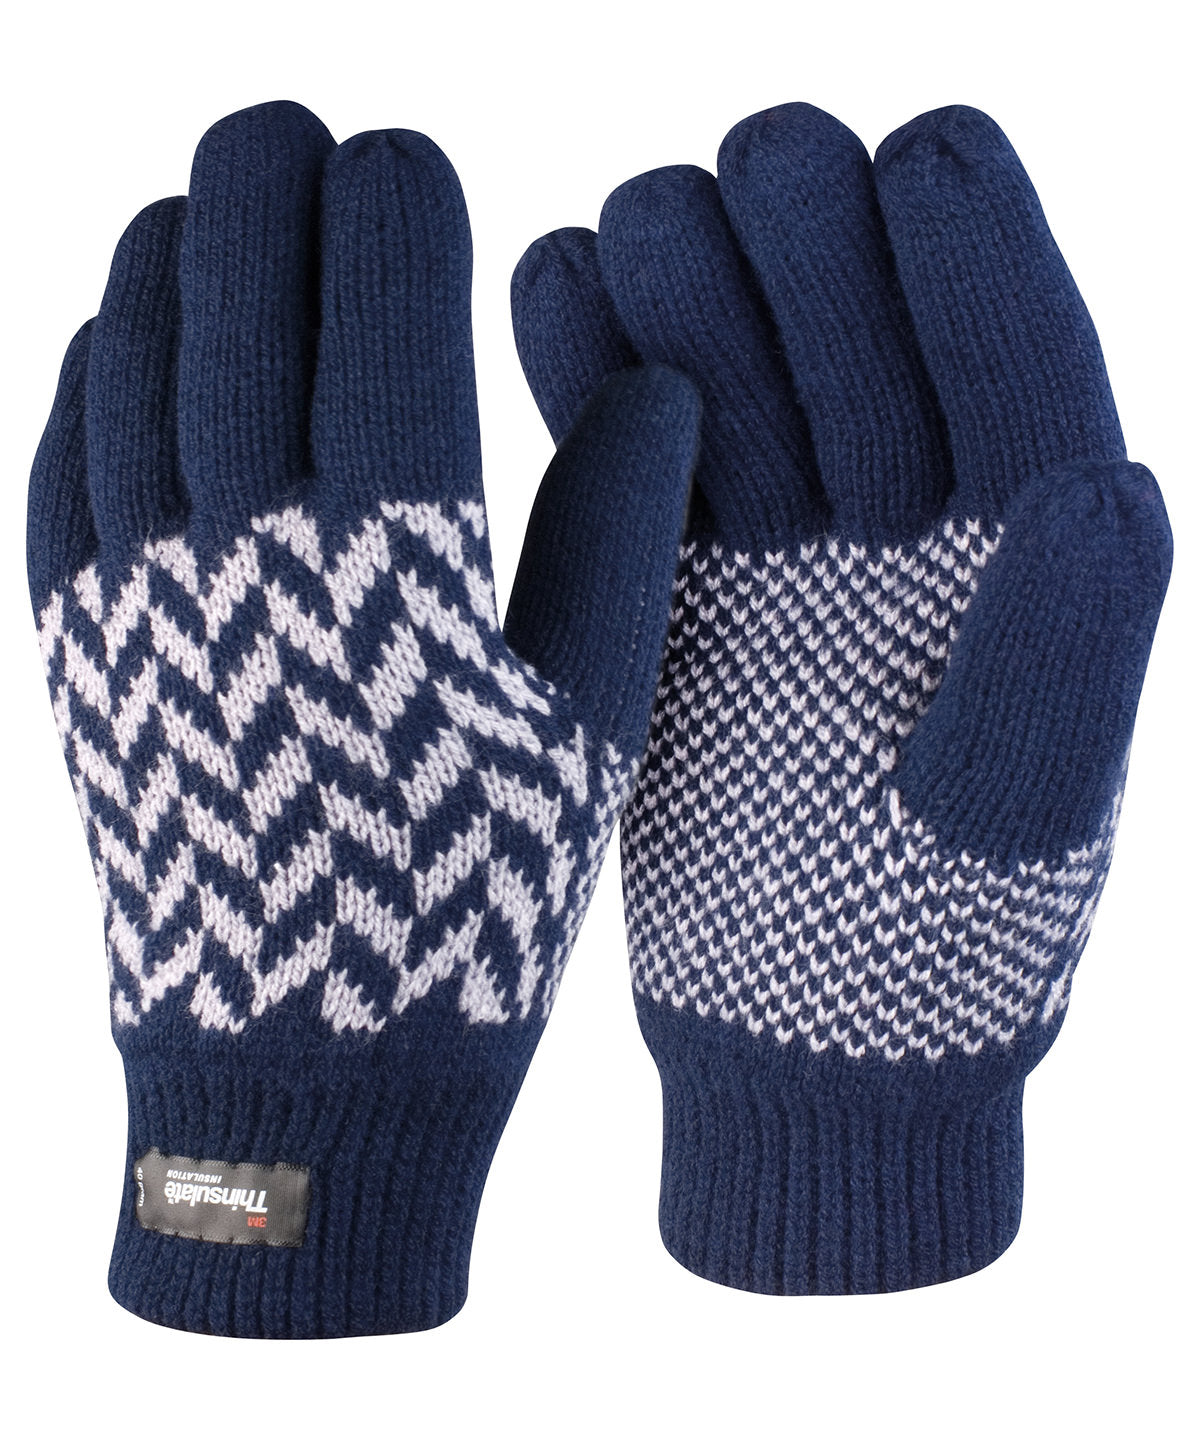 Hanska - Pattern Thinsulate™ Glove